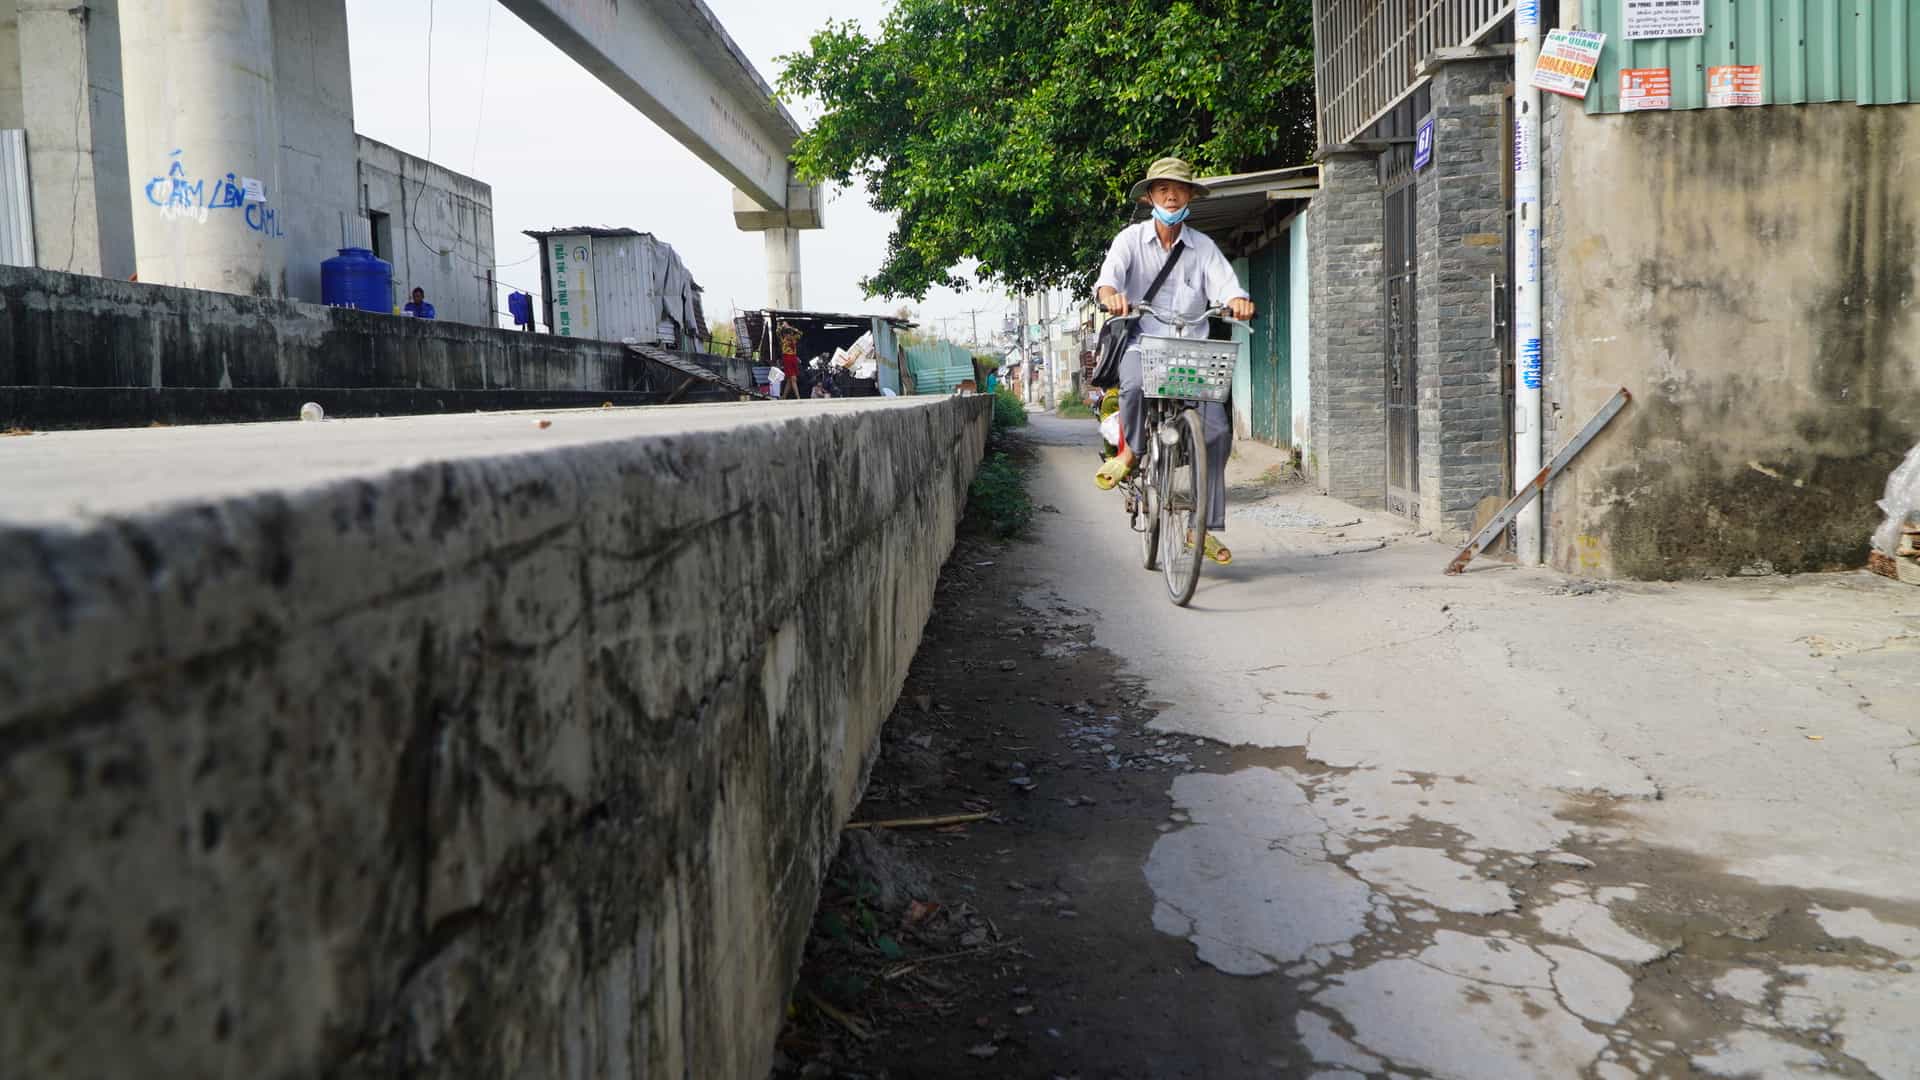 Trên đường Phú Định dự án ngăn triều xây dựng bệ móng cao 1m, rộng 2-3m, các cục bê tông, rào chắn chiếm hơn nửa mặt đường Phú Định, chỉ chừa lại khoảng 1m đường đi cho người dân khu vực này qua lại.